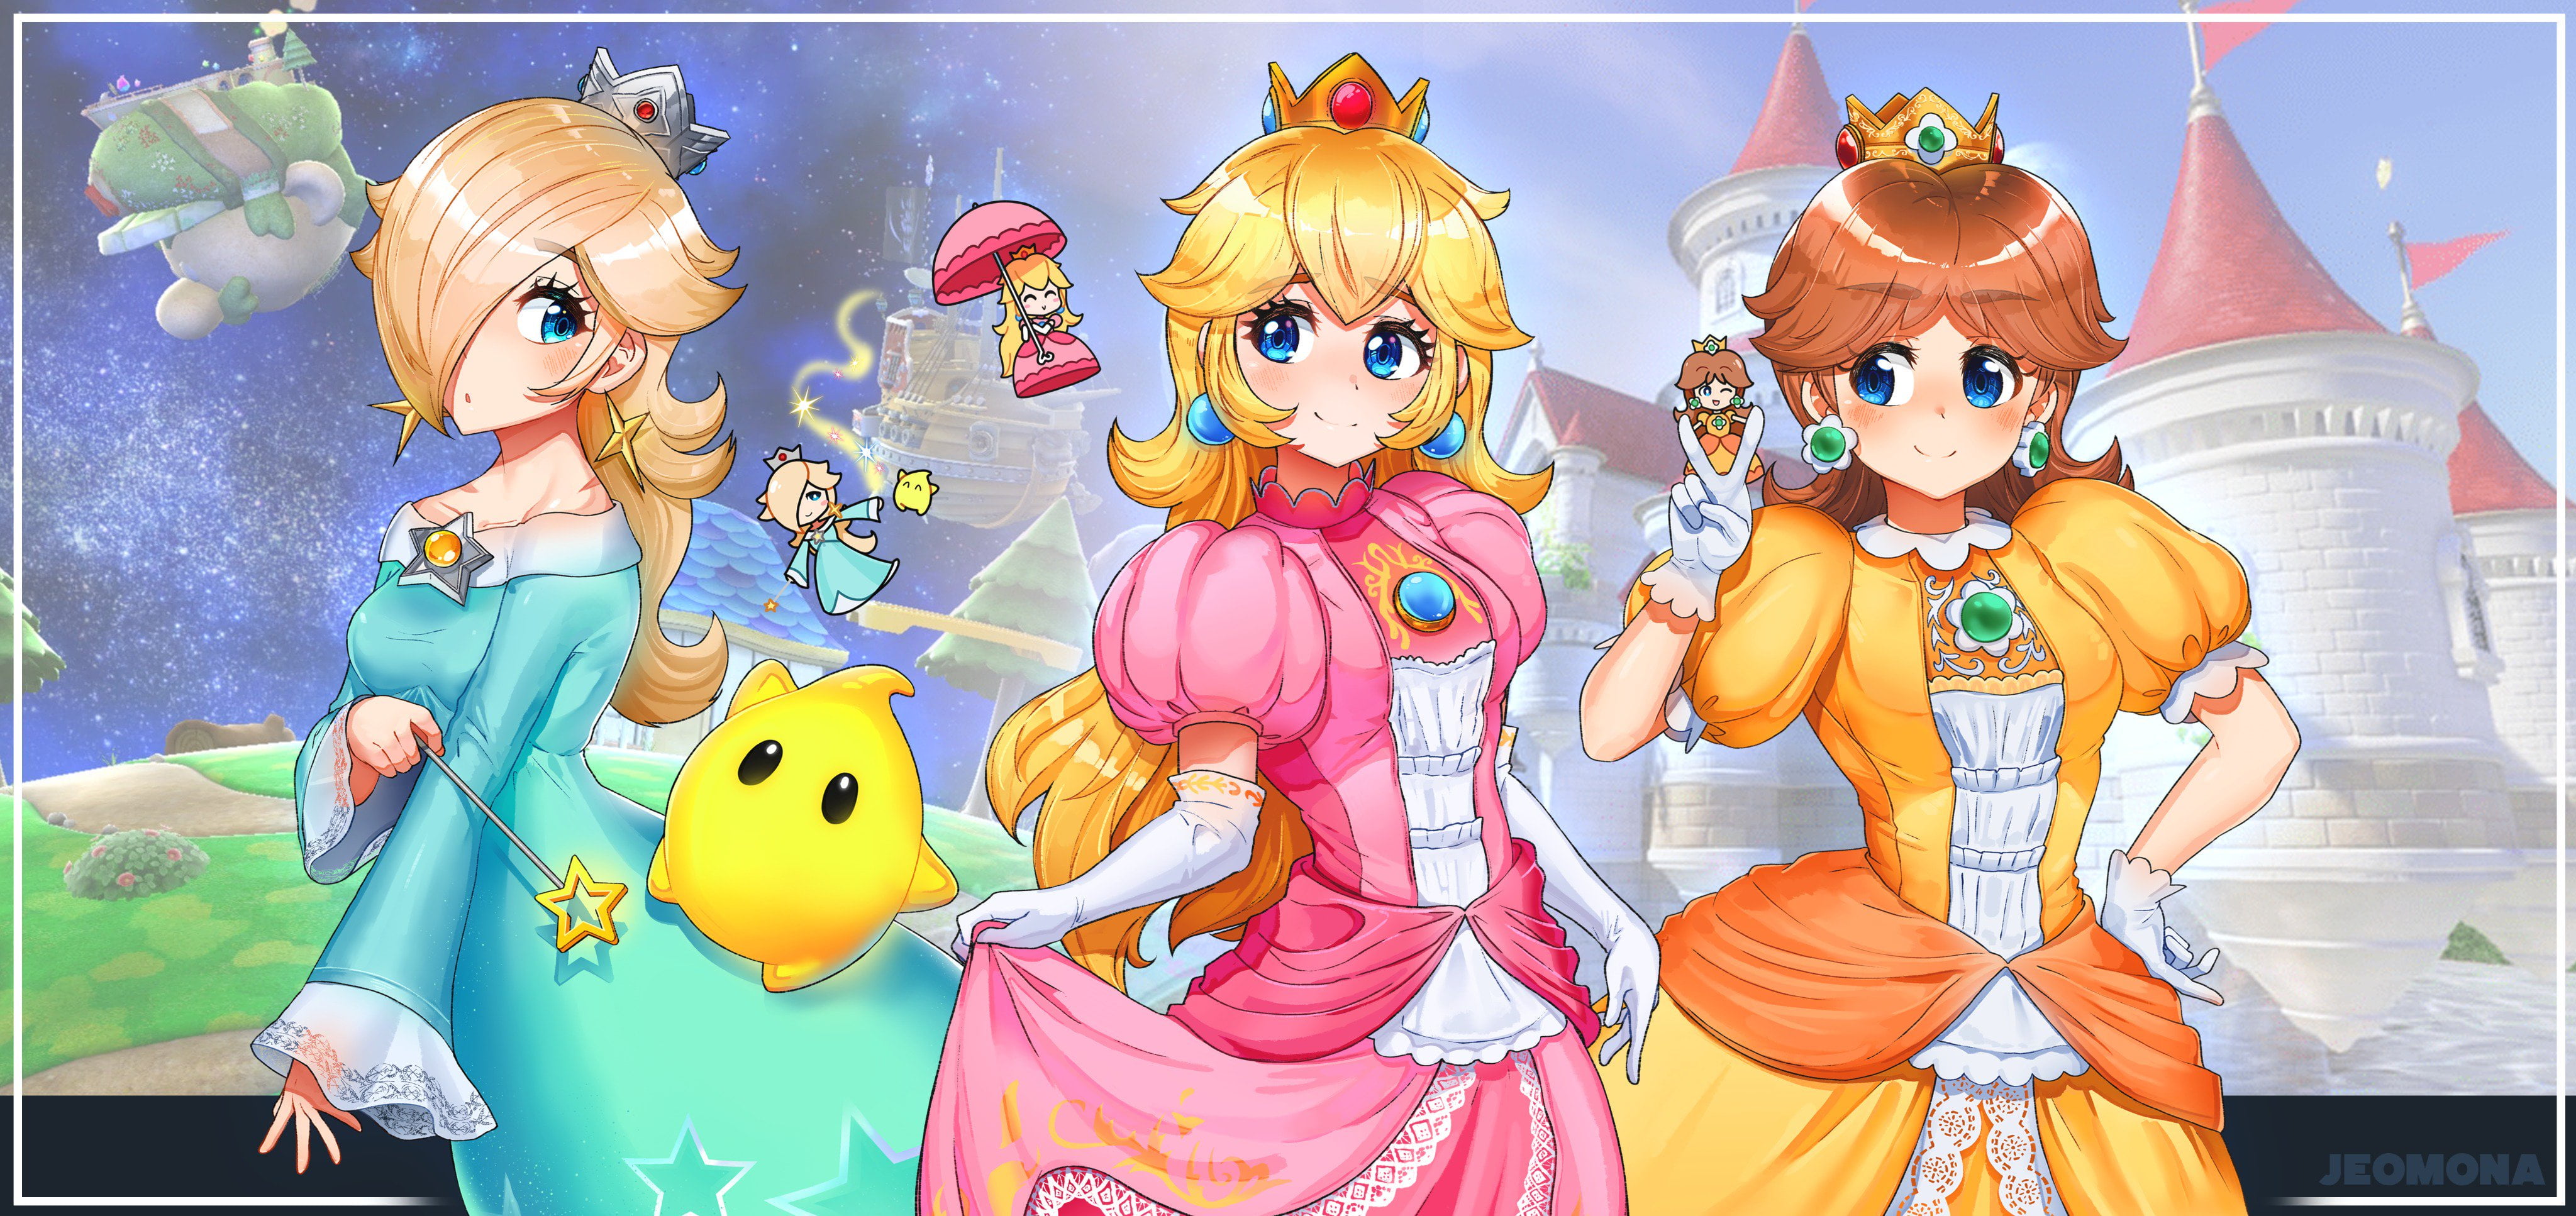 Free Download Hd Wallpaper Mario Bros Princess Rosalina Princess Daisy Princess Peach 2271